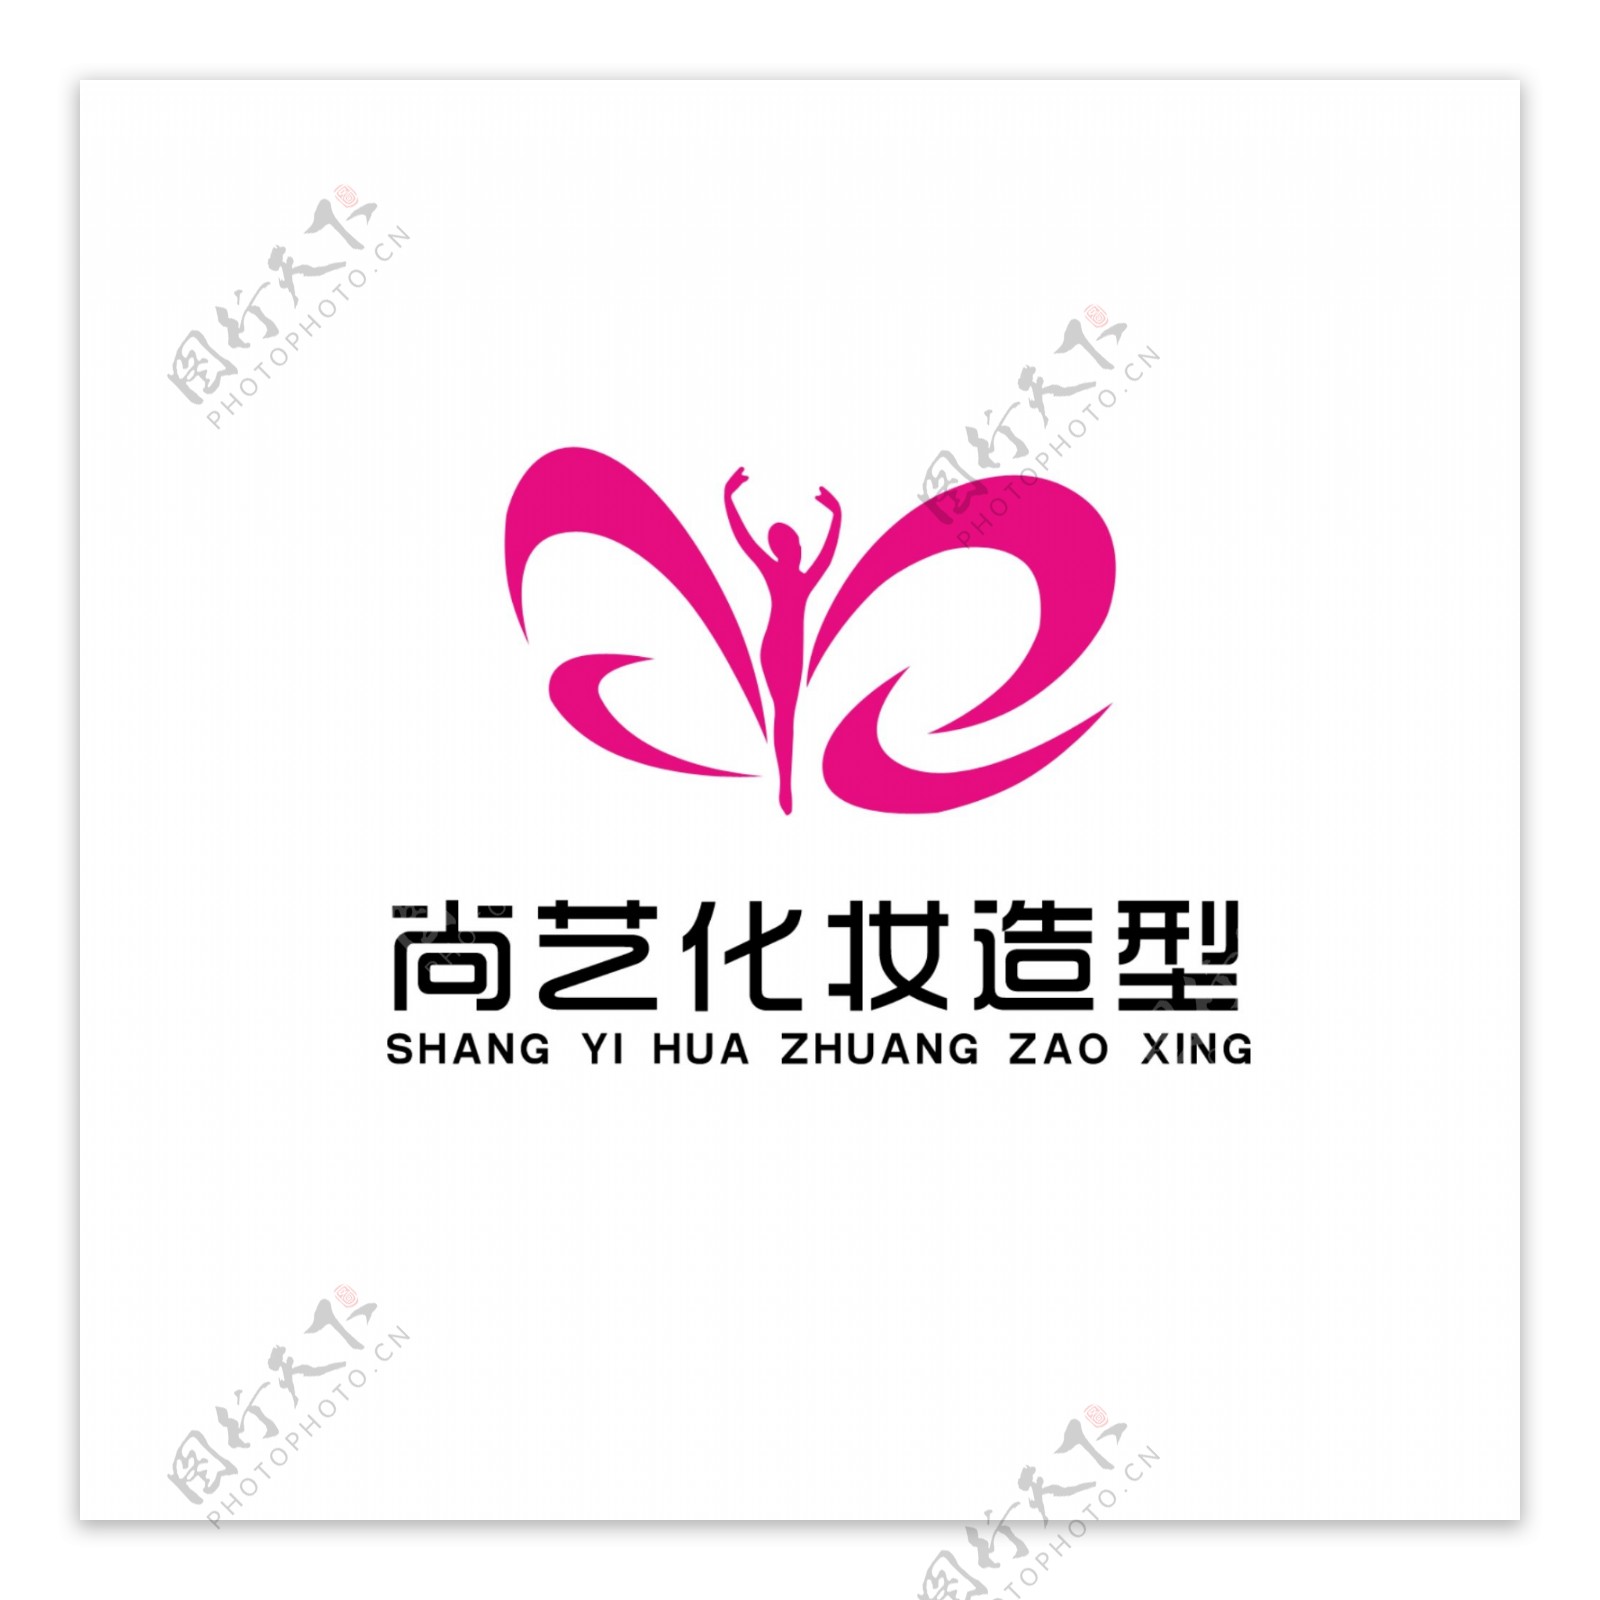 尚艺造型培训机构logo设计